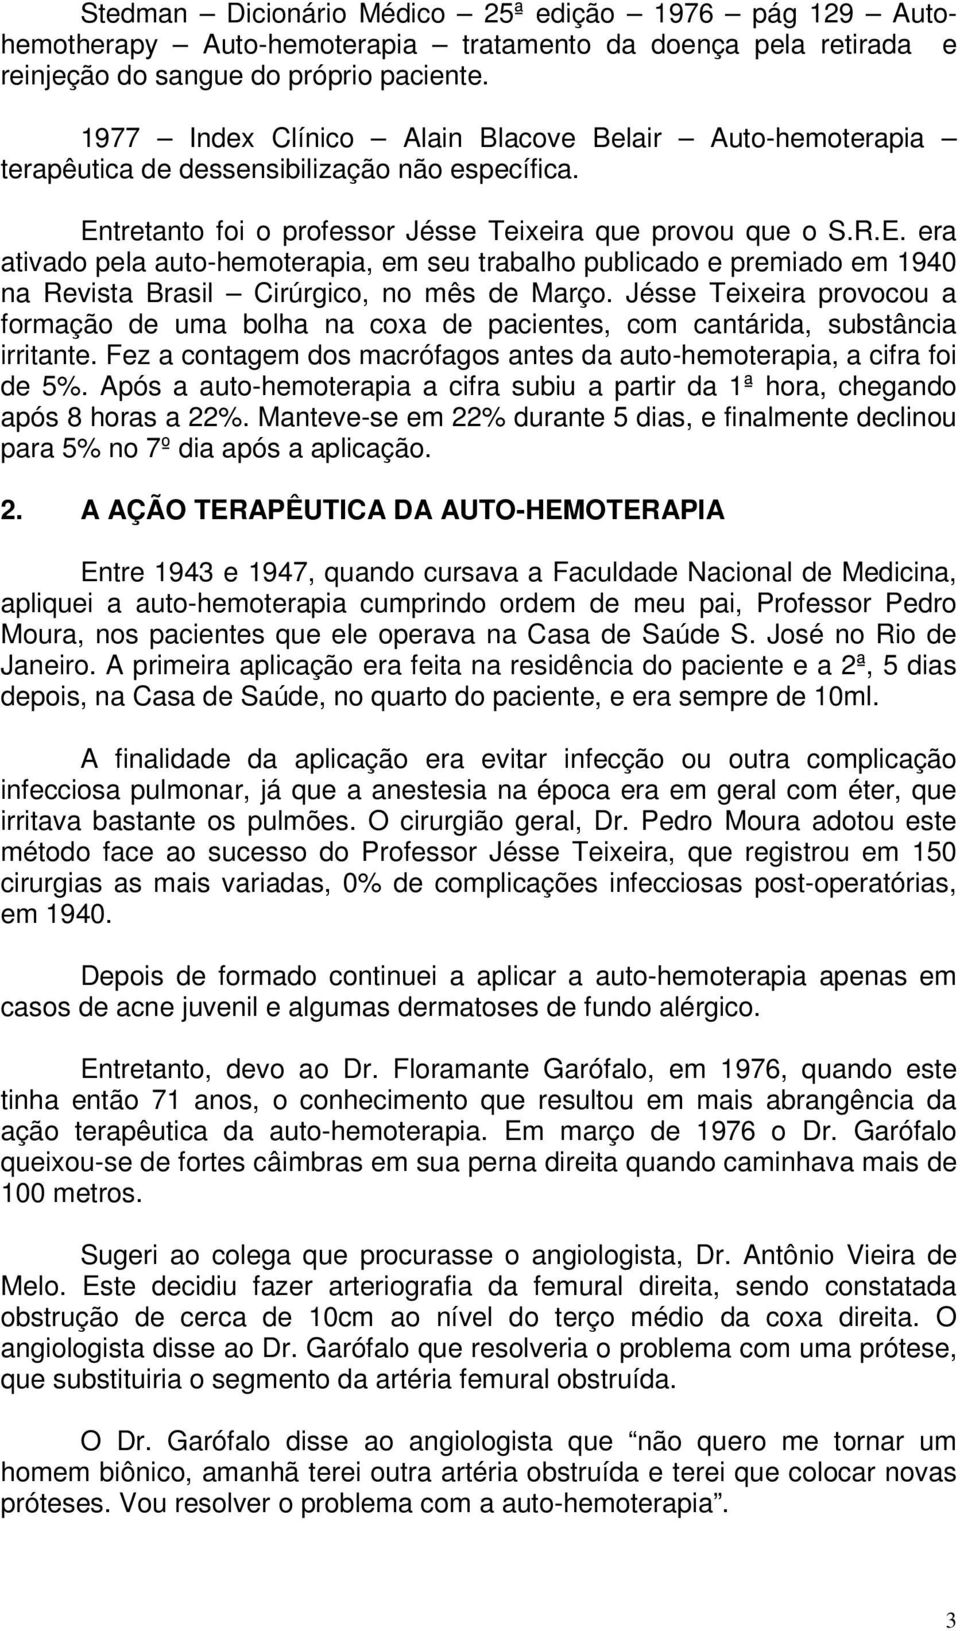 tretanto foi o professor Jésse Teixeira que provou que o S.R.E. era ativado pela auto-hemoterapia, em seu trabalho publicado e premiado em 1940 na Revista Brasil Cirúrgico, no mês de Março.